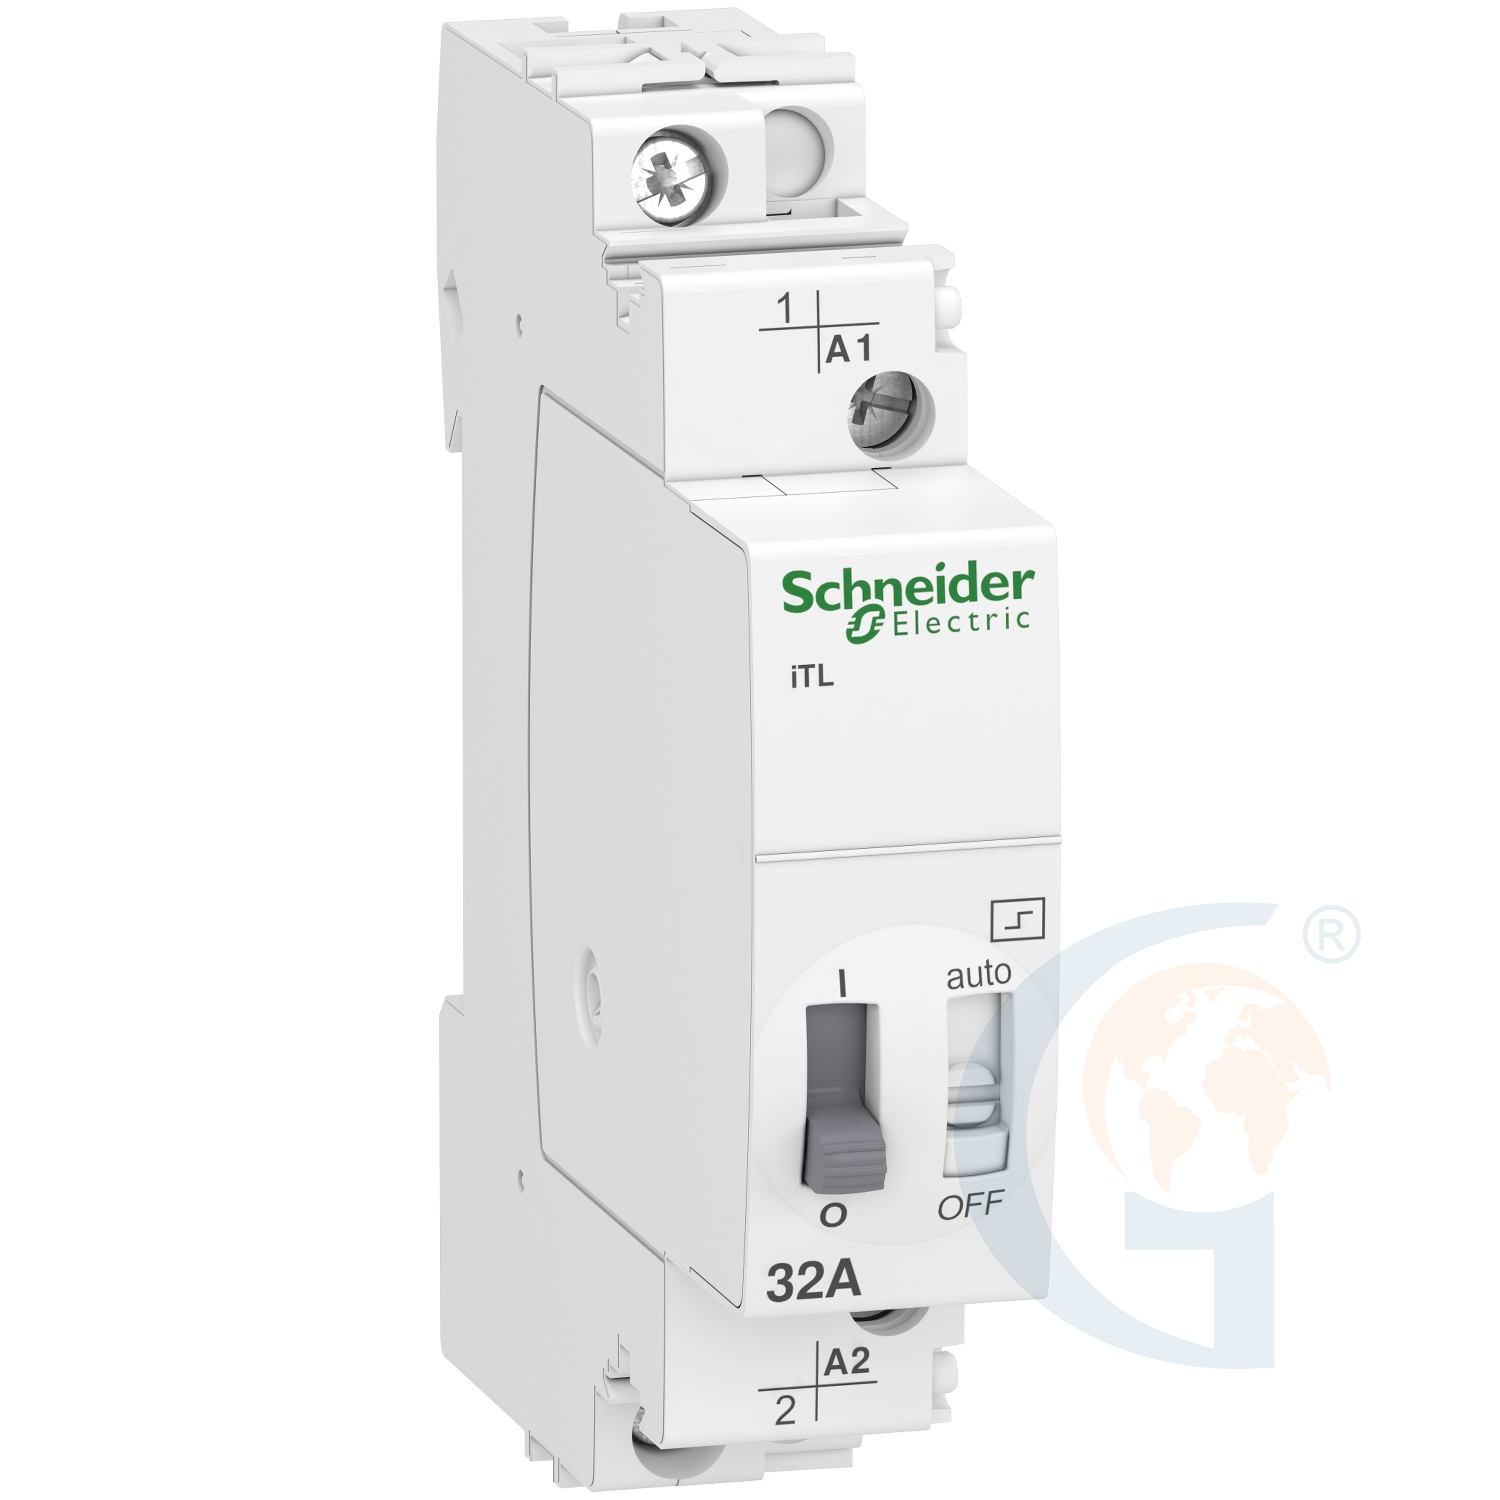 Schneider Electric A9C30831 IMPULSE RELAY ITL – 1P – 1NO – 32A – COIL 110 VDC – 230…240 VAC 50/60HZ https://gesrepair.com/wp-content/uploads/2020/Schneider/Schneider_Electric_A9C30831_.jpg